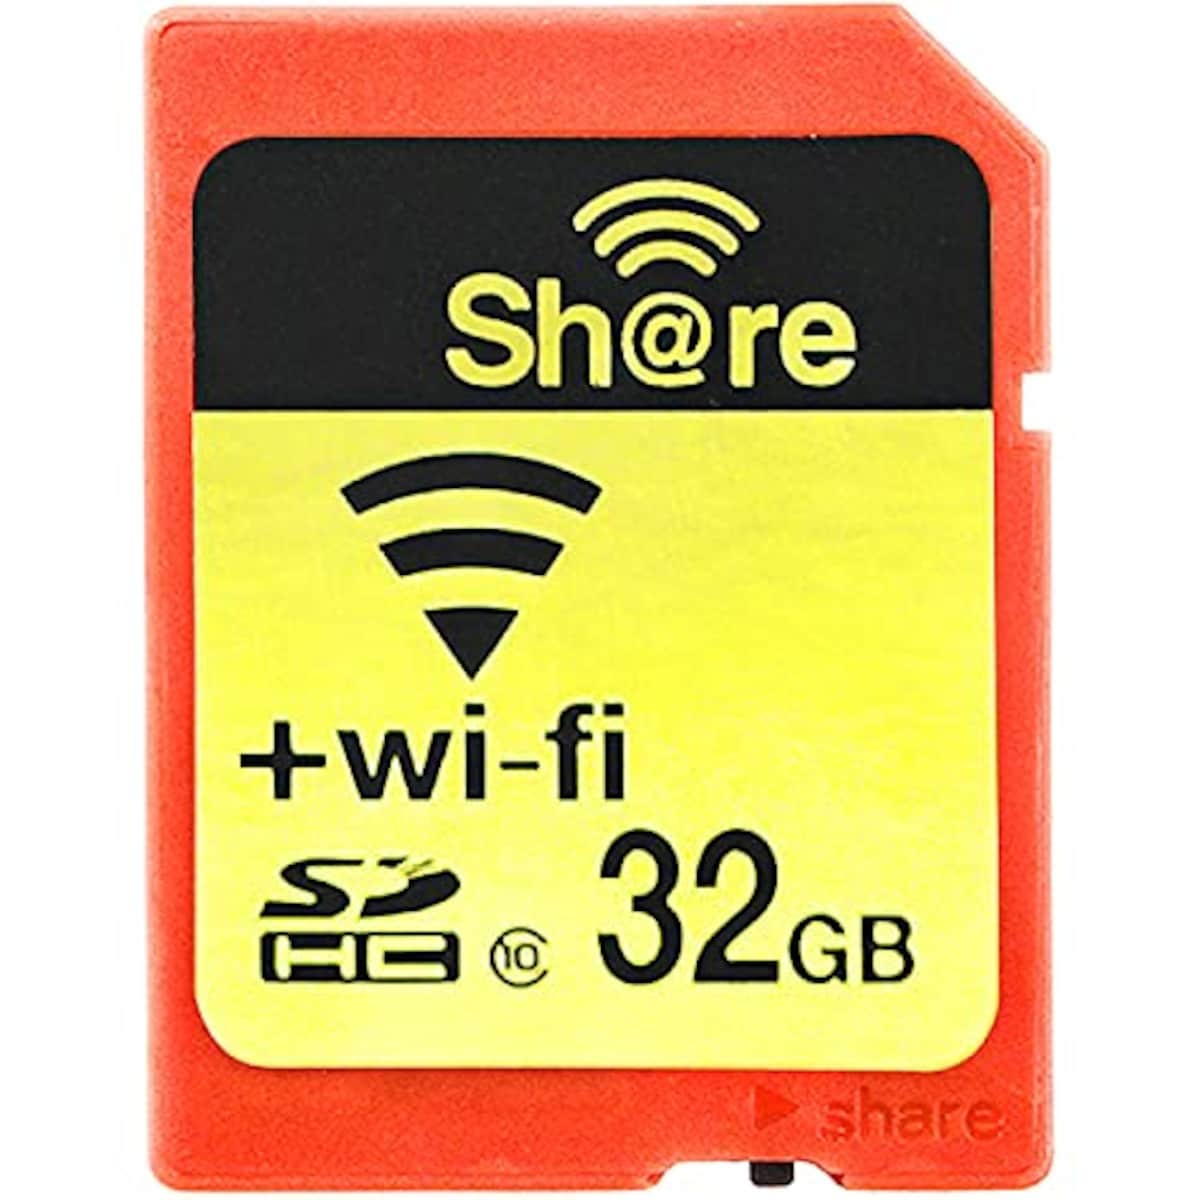 Wi-Fi機能搭載 SDHCカード